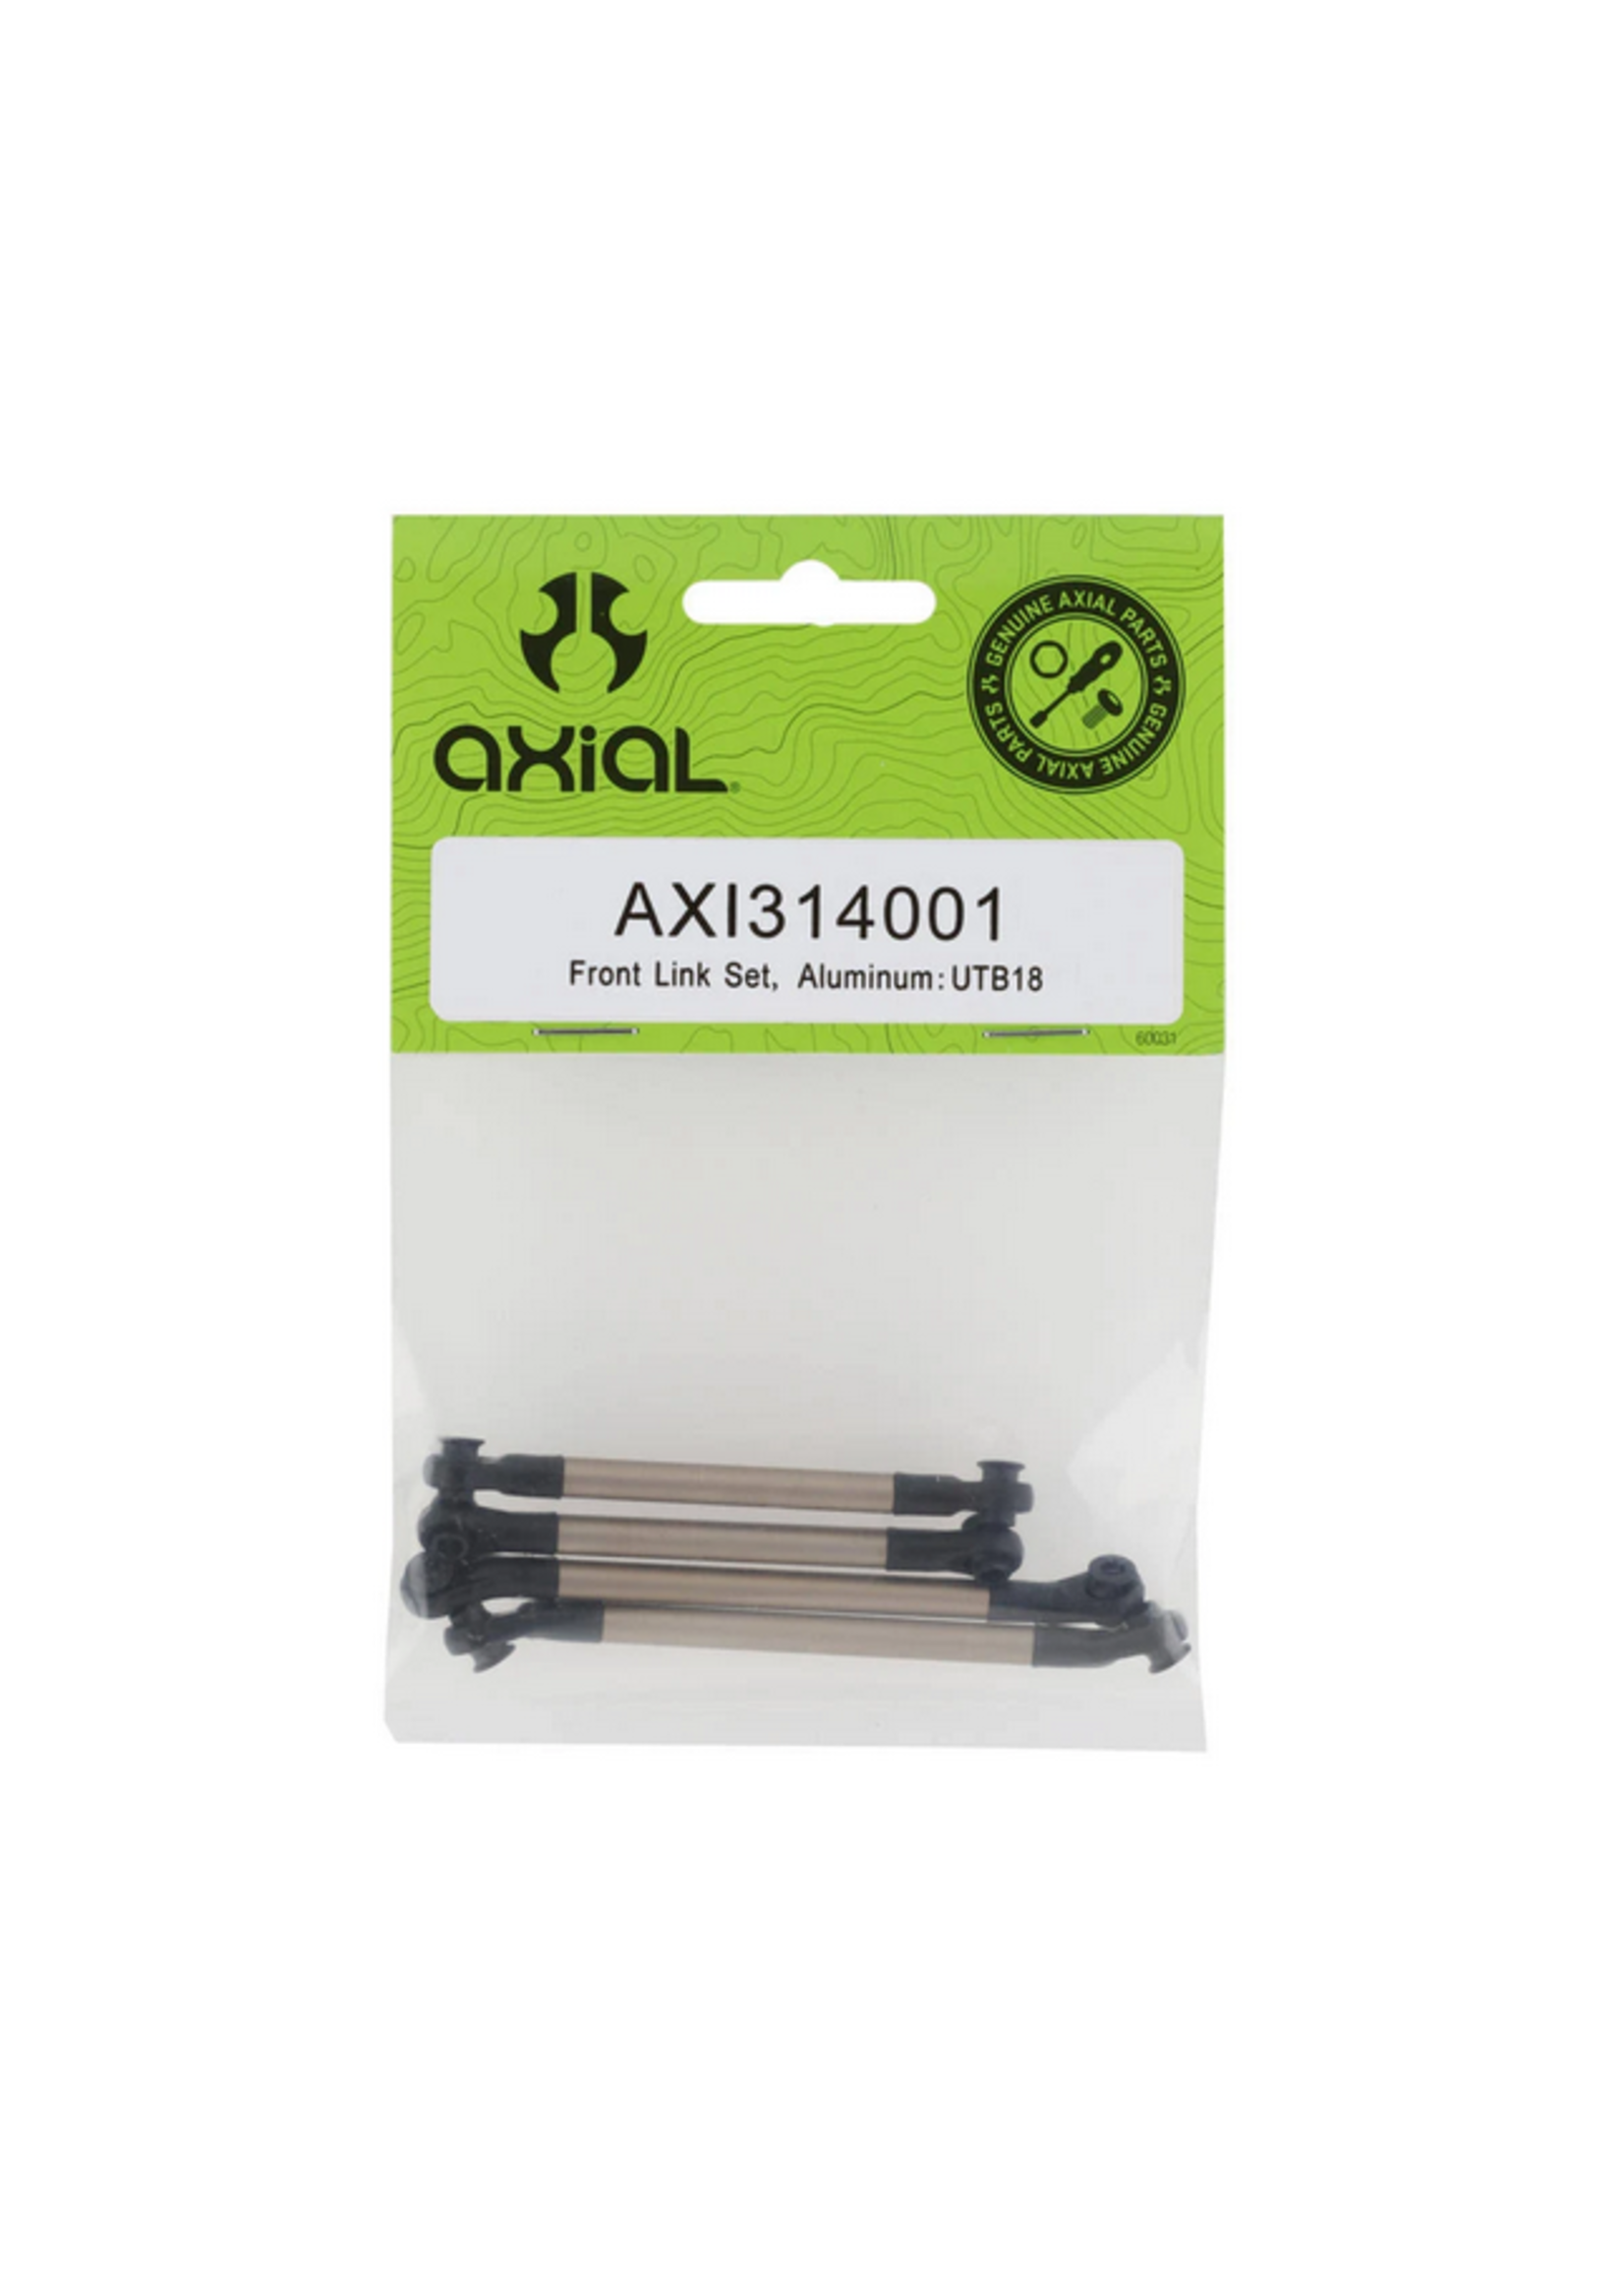 Axial AXI314001 Axial Front Link Set, Aluminum: UTB18